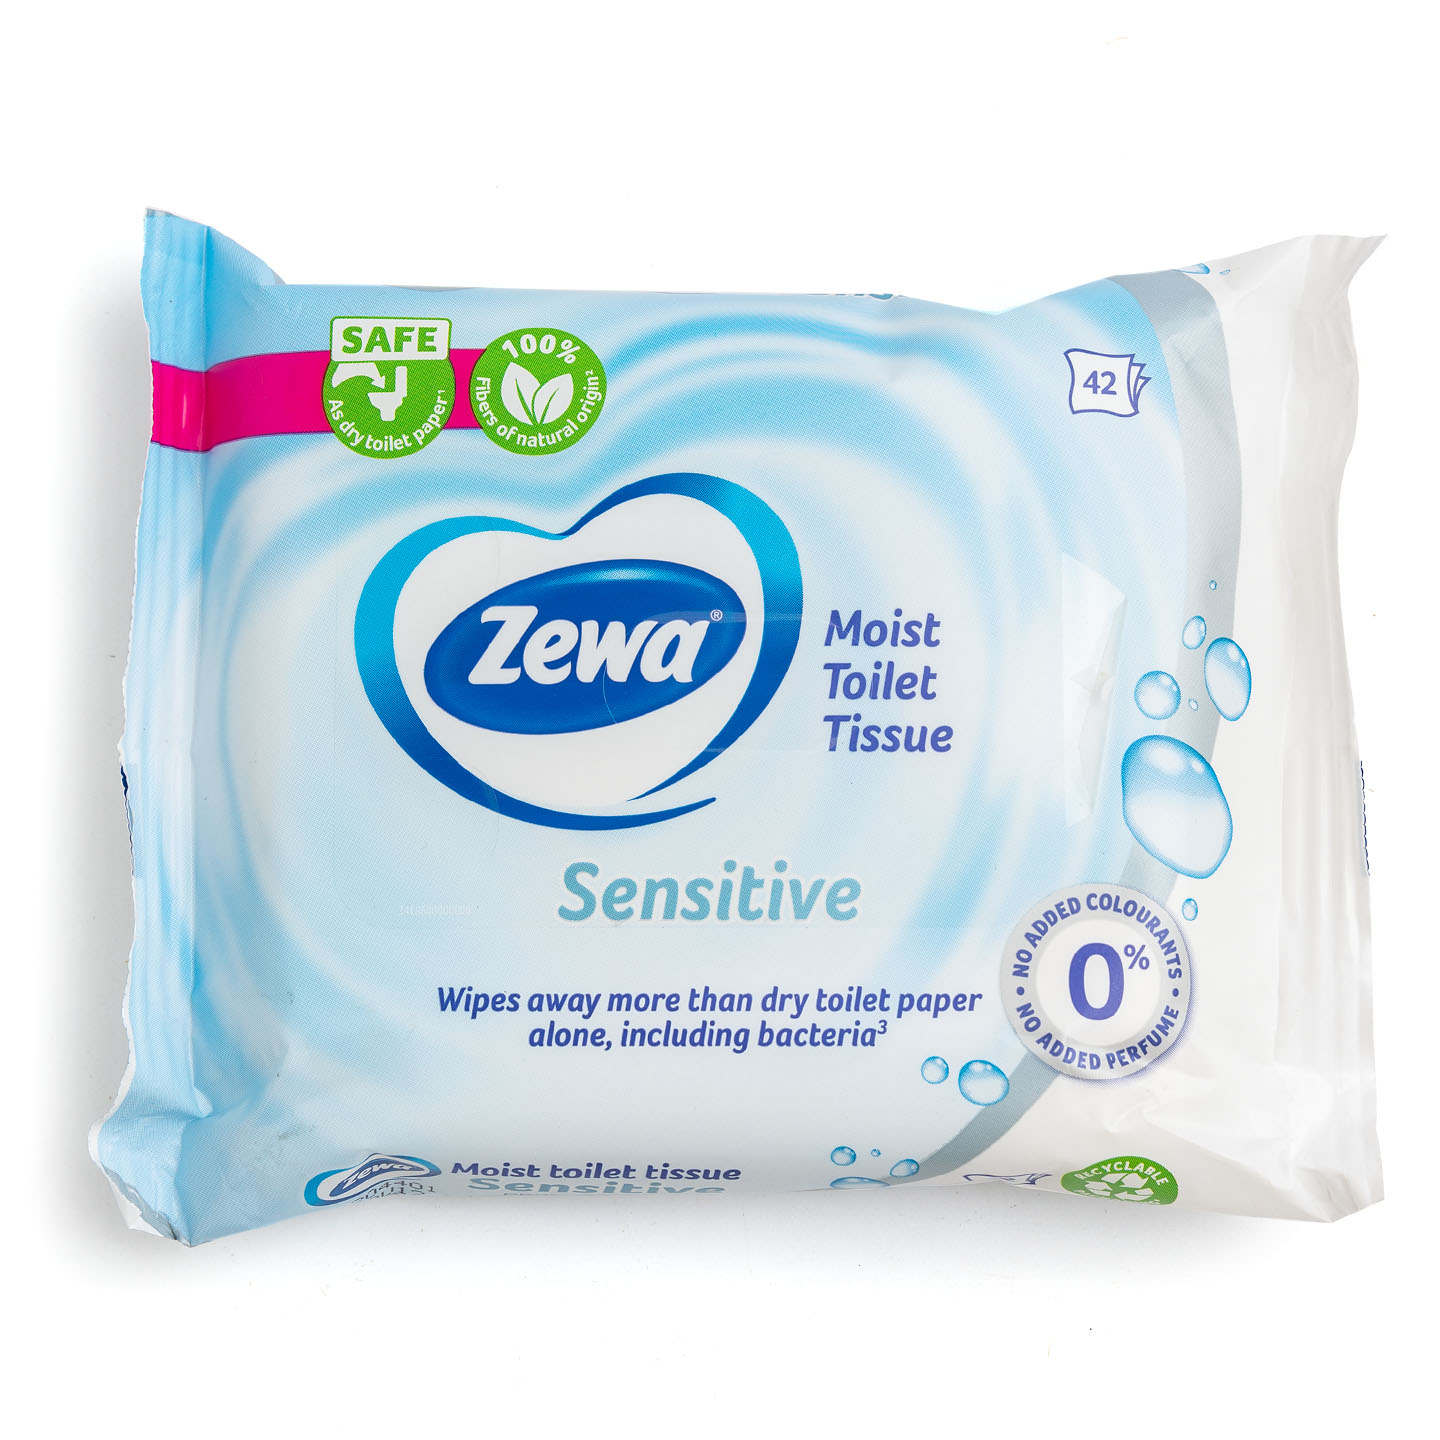 Hârtie igienica umedă Sensitive / Aloe Vera Zewa 42 bucăți